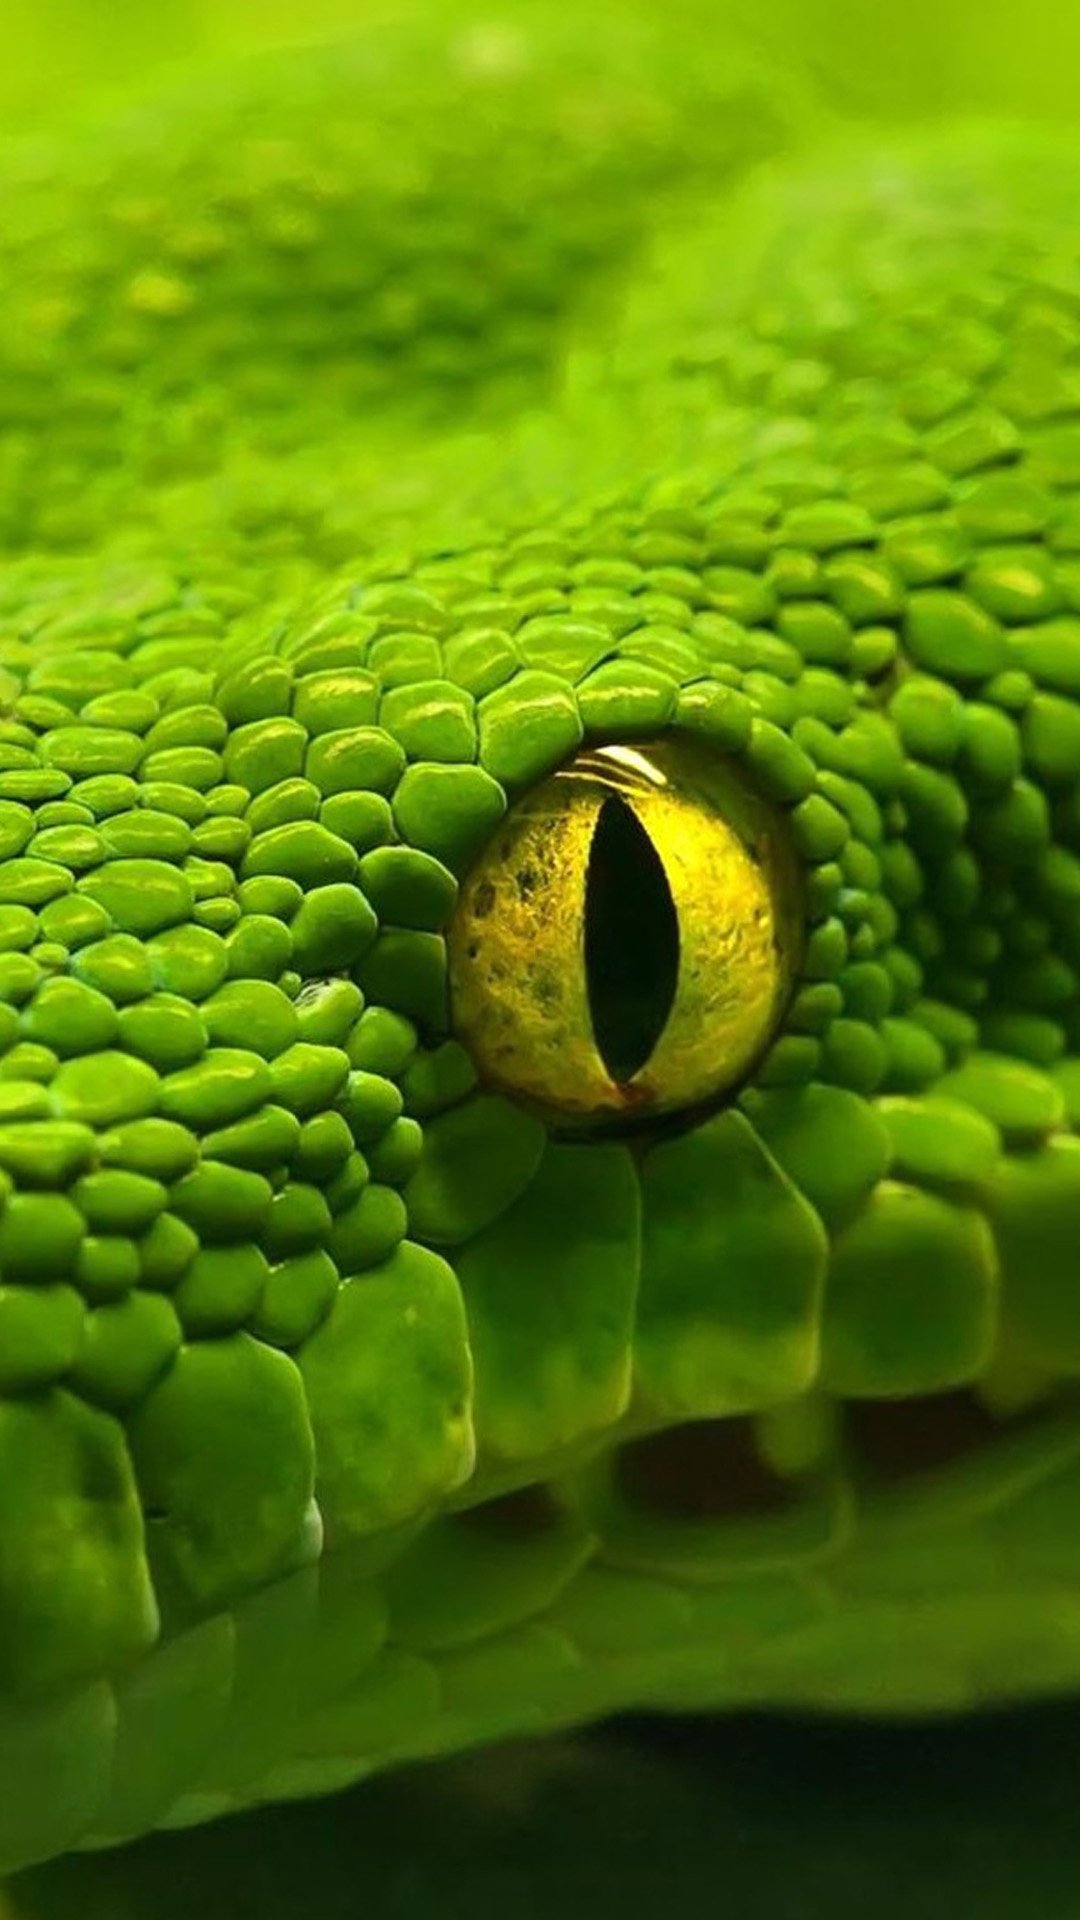 wallpaper em movimento,serpiente verde lisa,verde,reptil,serpiente,serpiente